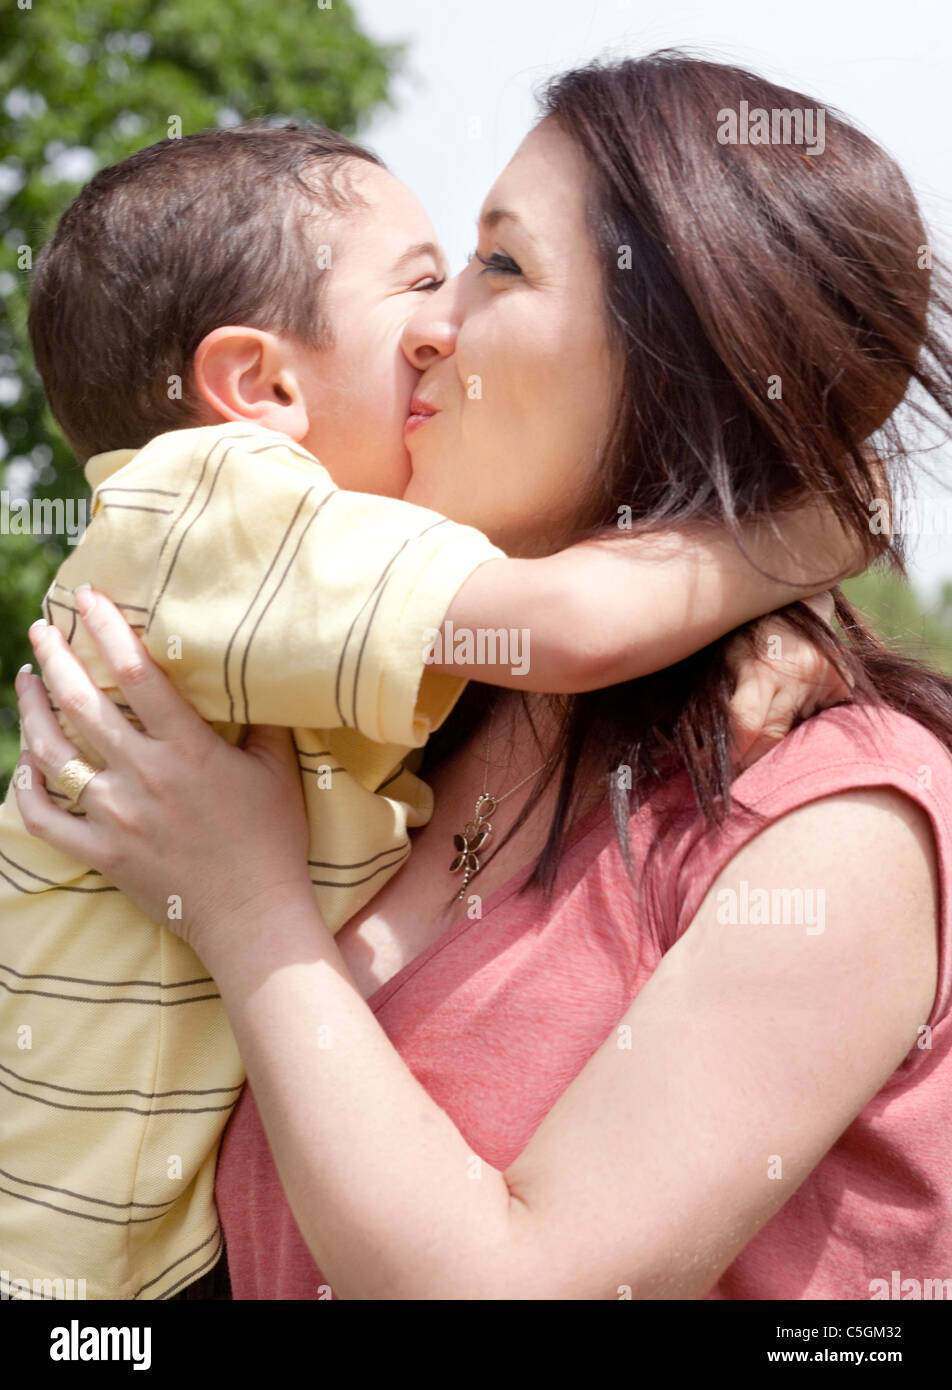 Видео целовать маму. Поцелуй матери. Поцелуй матери и сына. Поцелуй матери и подростка. Мама целует сына.